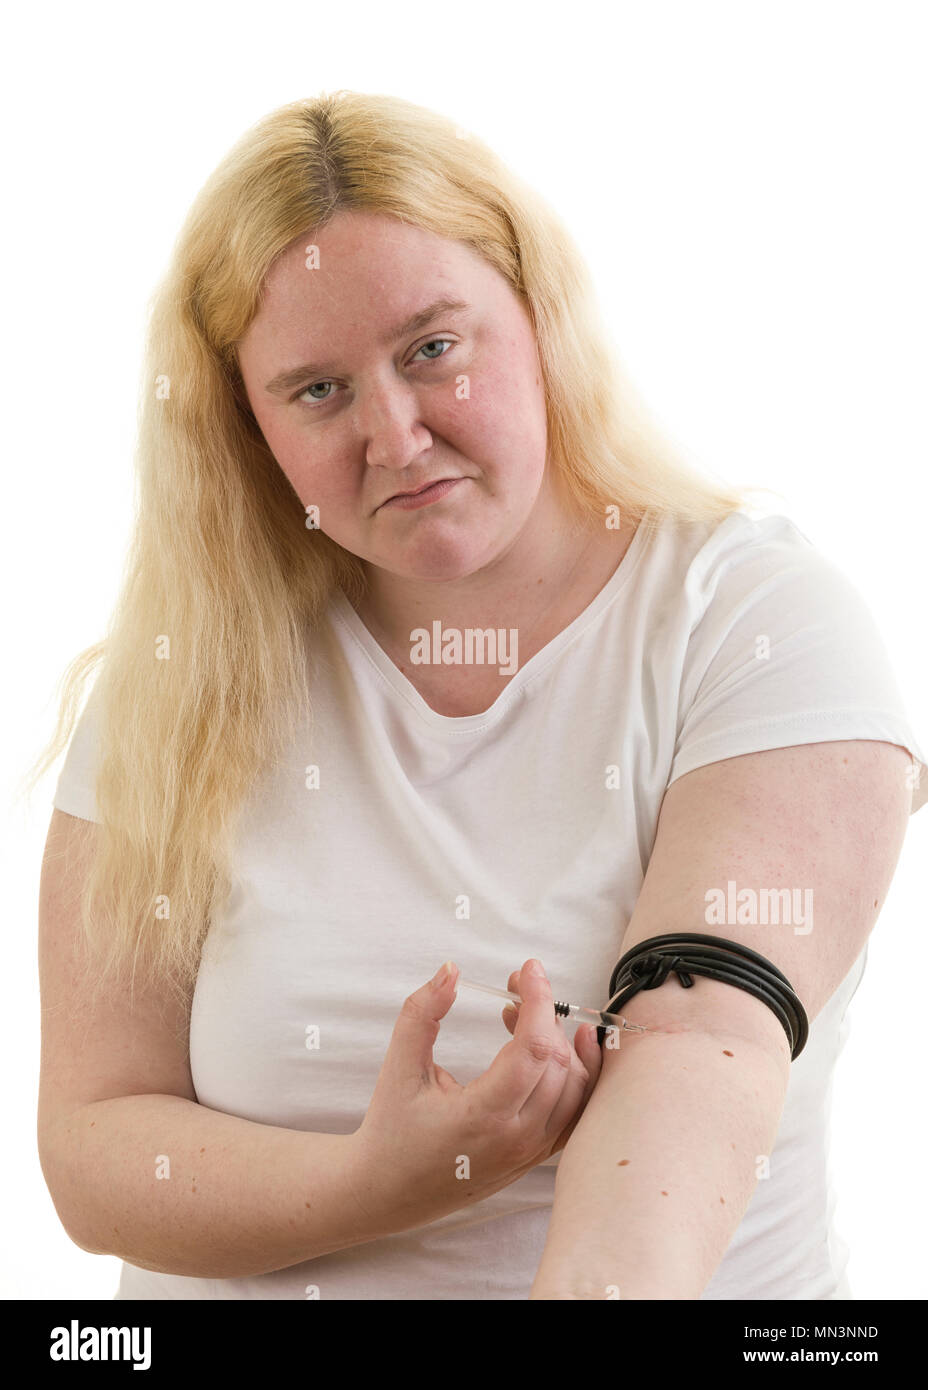 Junge kaukasier blond weiblich Frau gefesselt Arm mit Kautschukband und selbst injizieren in Arm mit Spritze auf weißem Hintergrund Model Release: Ja. Property Release: Nein. Stockfoto